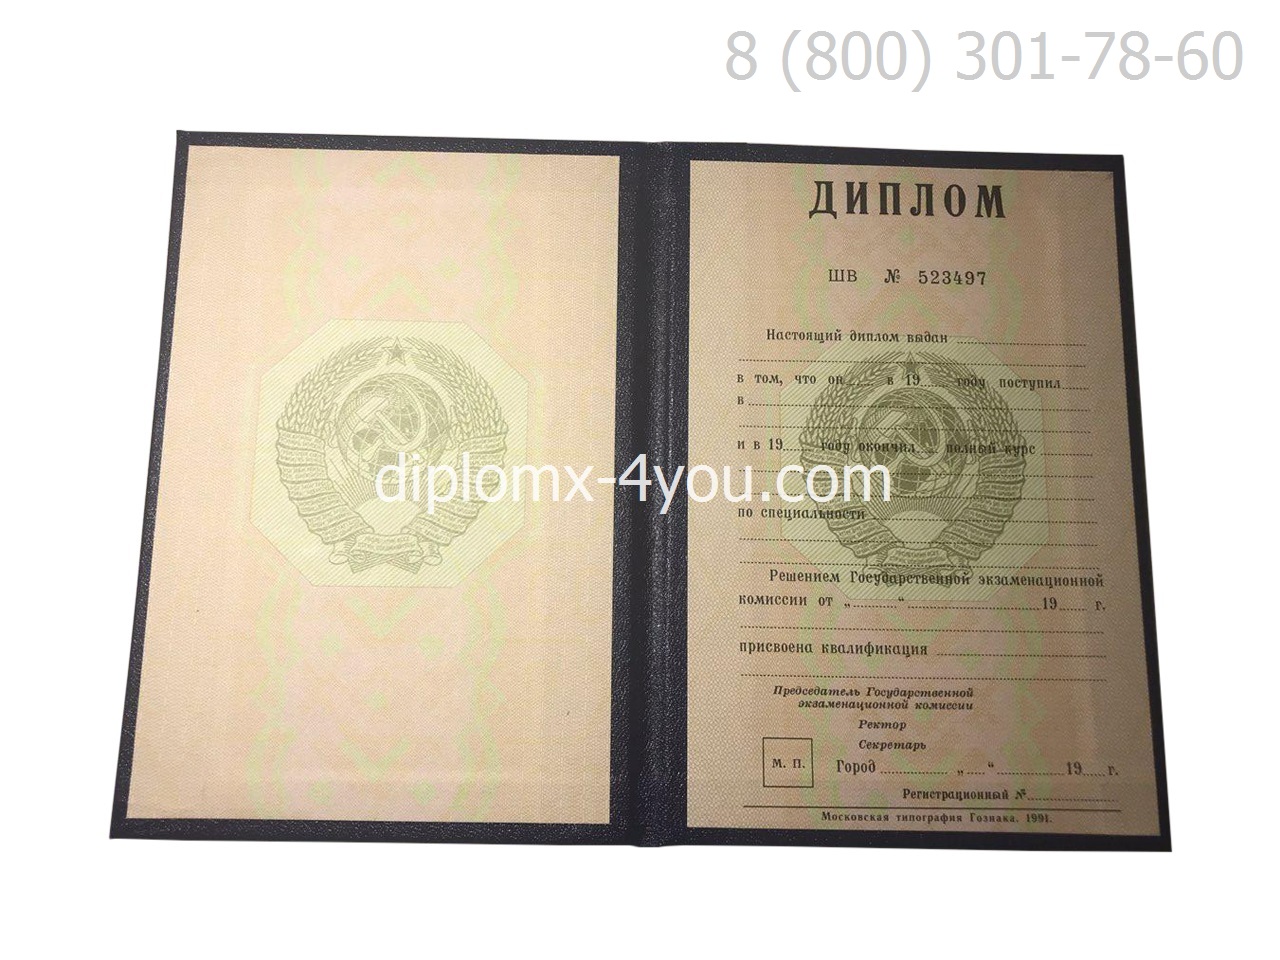 Диплом о высшем образовании СССР с отличием до 1996 года, образец-1